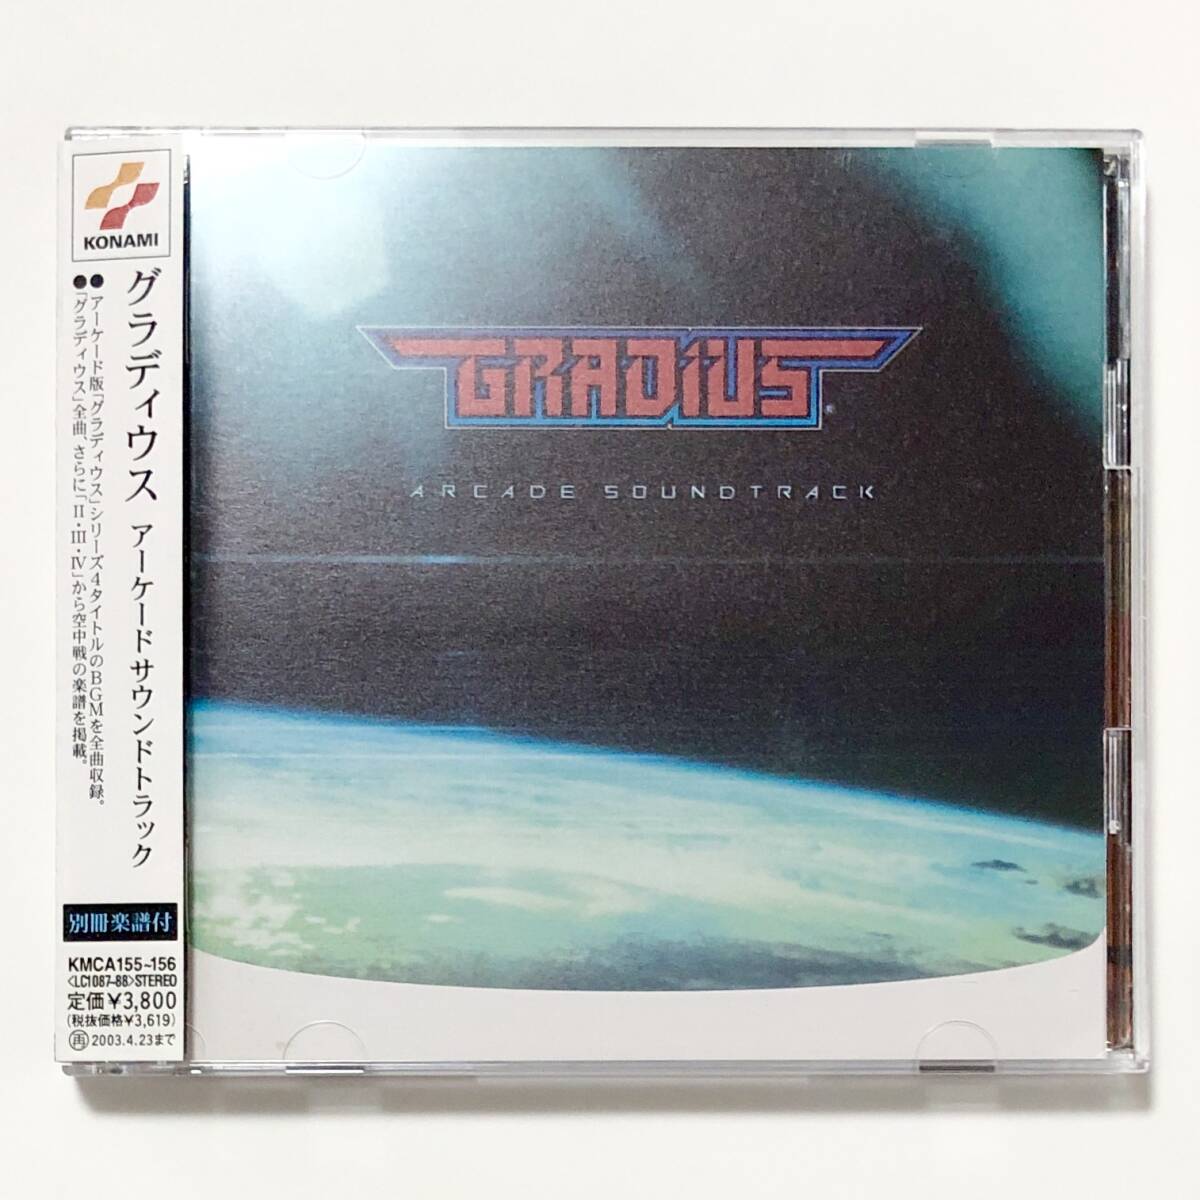 ゲーム音楽CD 2枚組 グラディウス アーケードサウンドトラック / Gradius Arcade Soundtrack 帯付き コナミ Gradius Series OST CD Konami_画像1